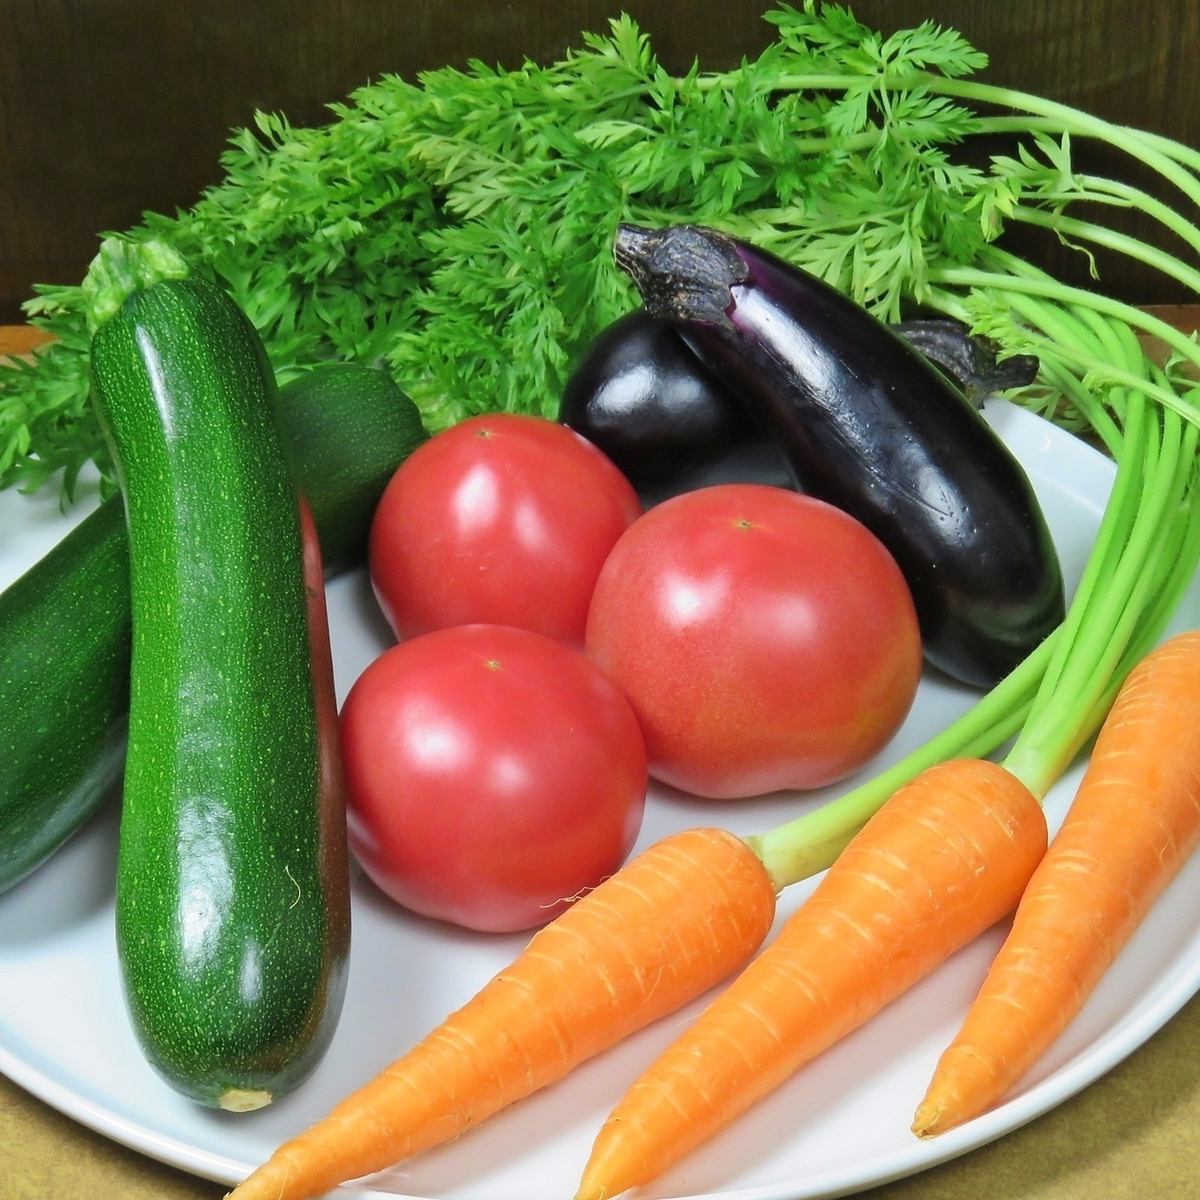 提供以從農民直接採購的蔬菜為中心的各種食材